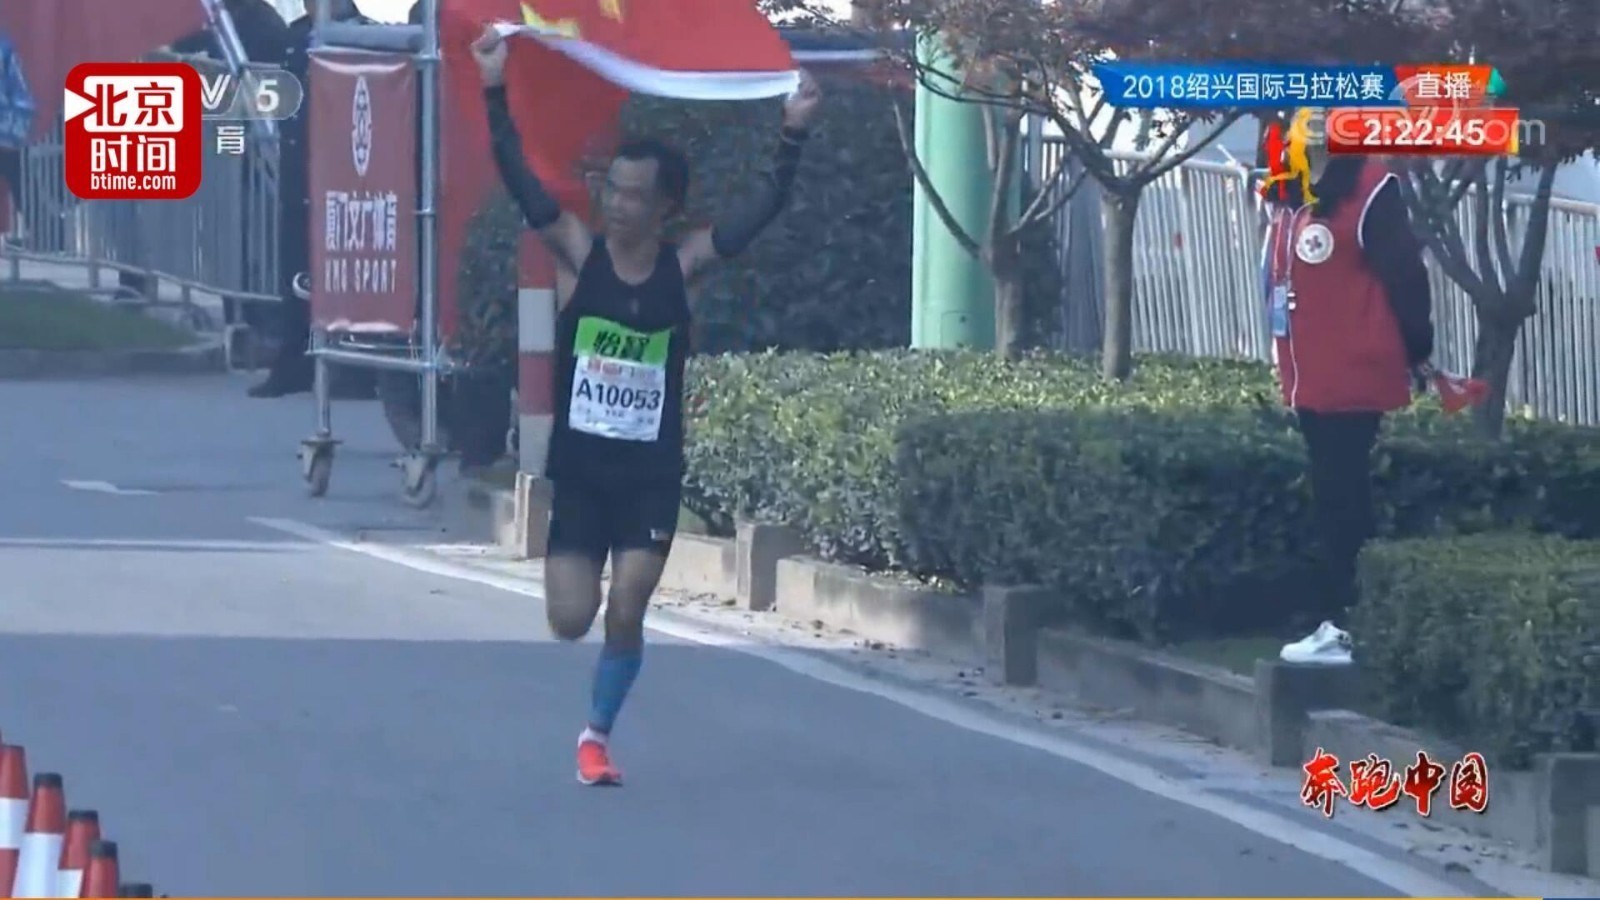 苏马冲刺递国旗干扰比赛事件后 奔跑中国继续护栏外递国旗